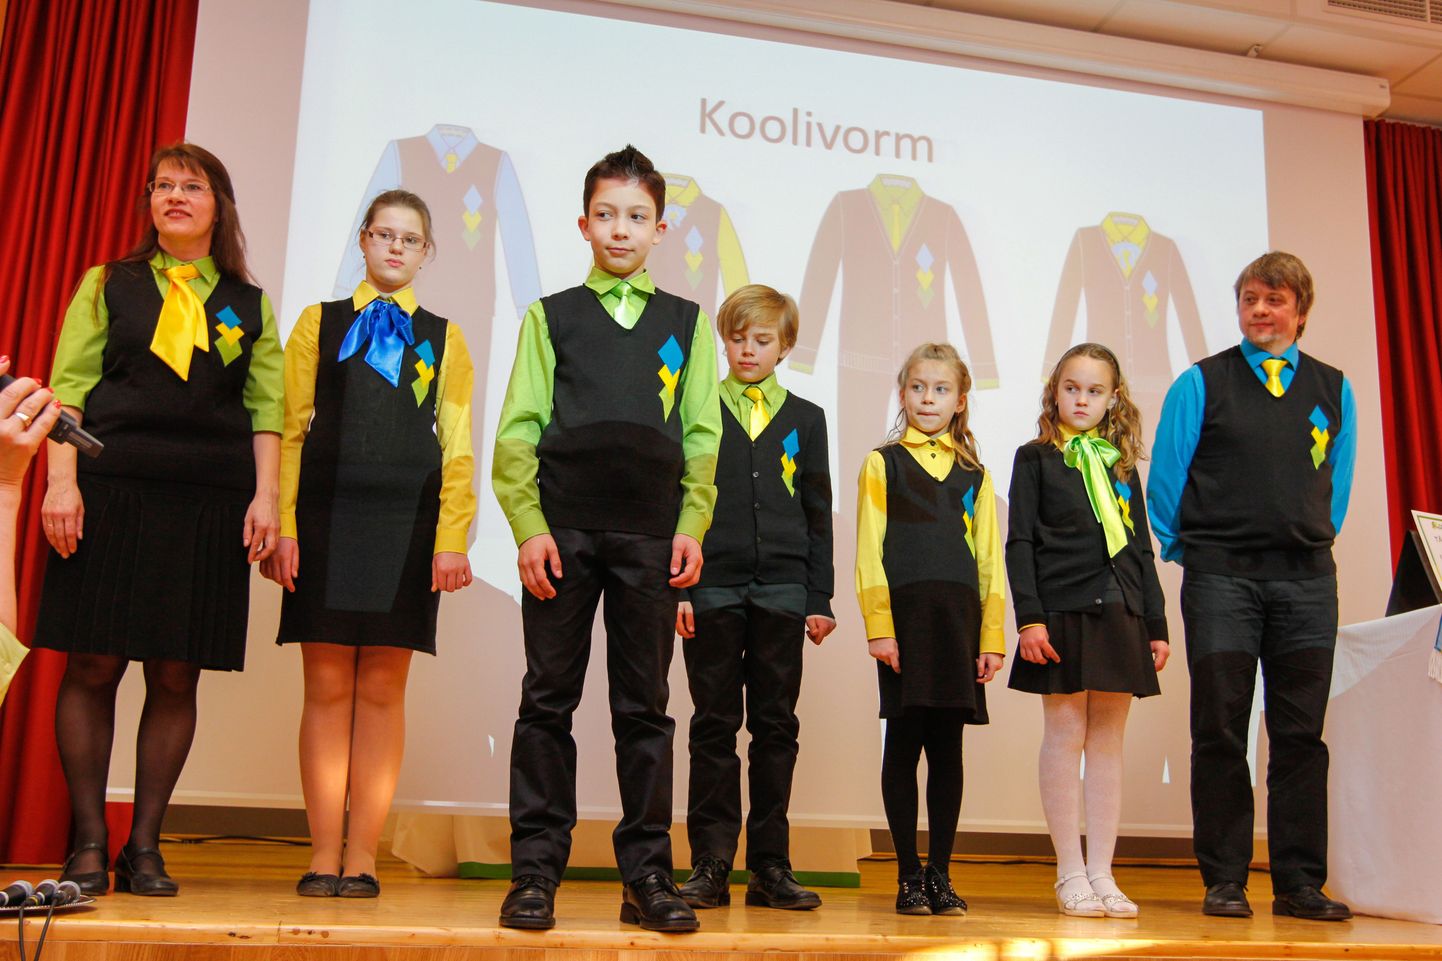 Kooli õppejuht Tiiu Püss tutvustas uut koolivormi, mille komplekti kuuluvad tuunika, seelik, pihikseelik, vest, pluusid, püksid, lipsud, kardigan ja sukkpüksid. Kõikidel esemetel on peal kooli kollast, sinist ja rohelist värvi logo.